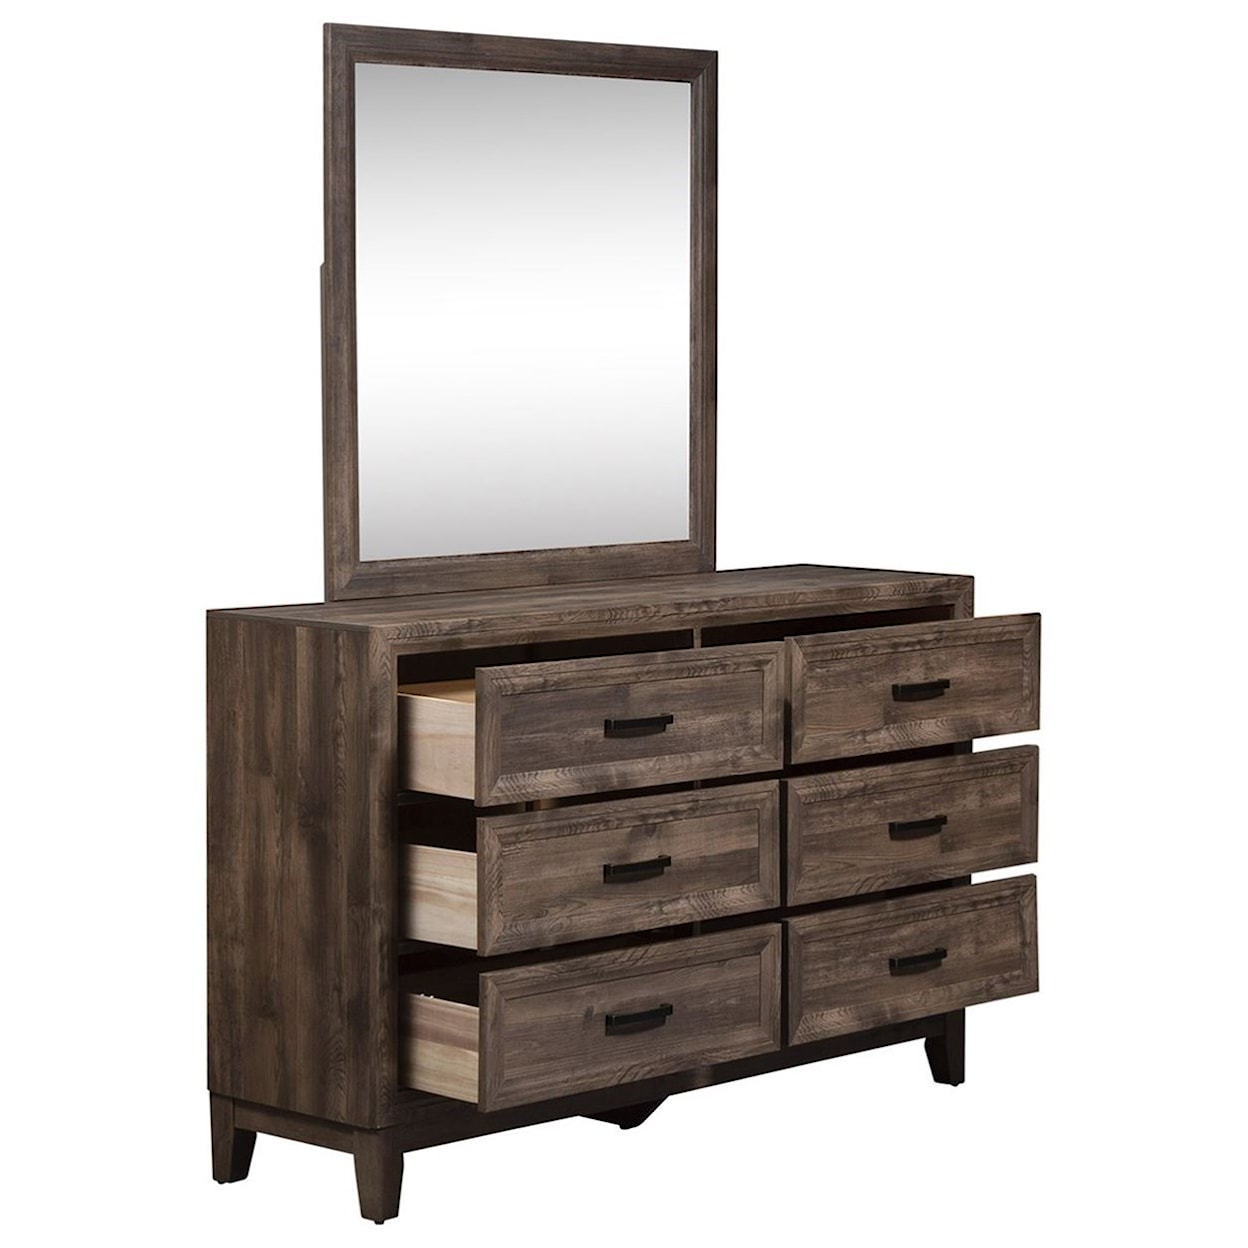 Freedom Furniture Ridgecrest Dresser and Mirror Set